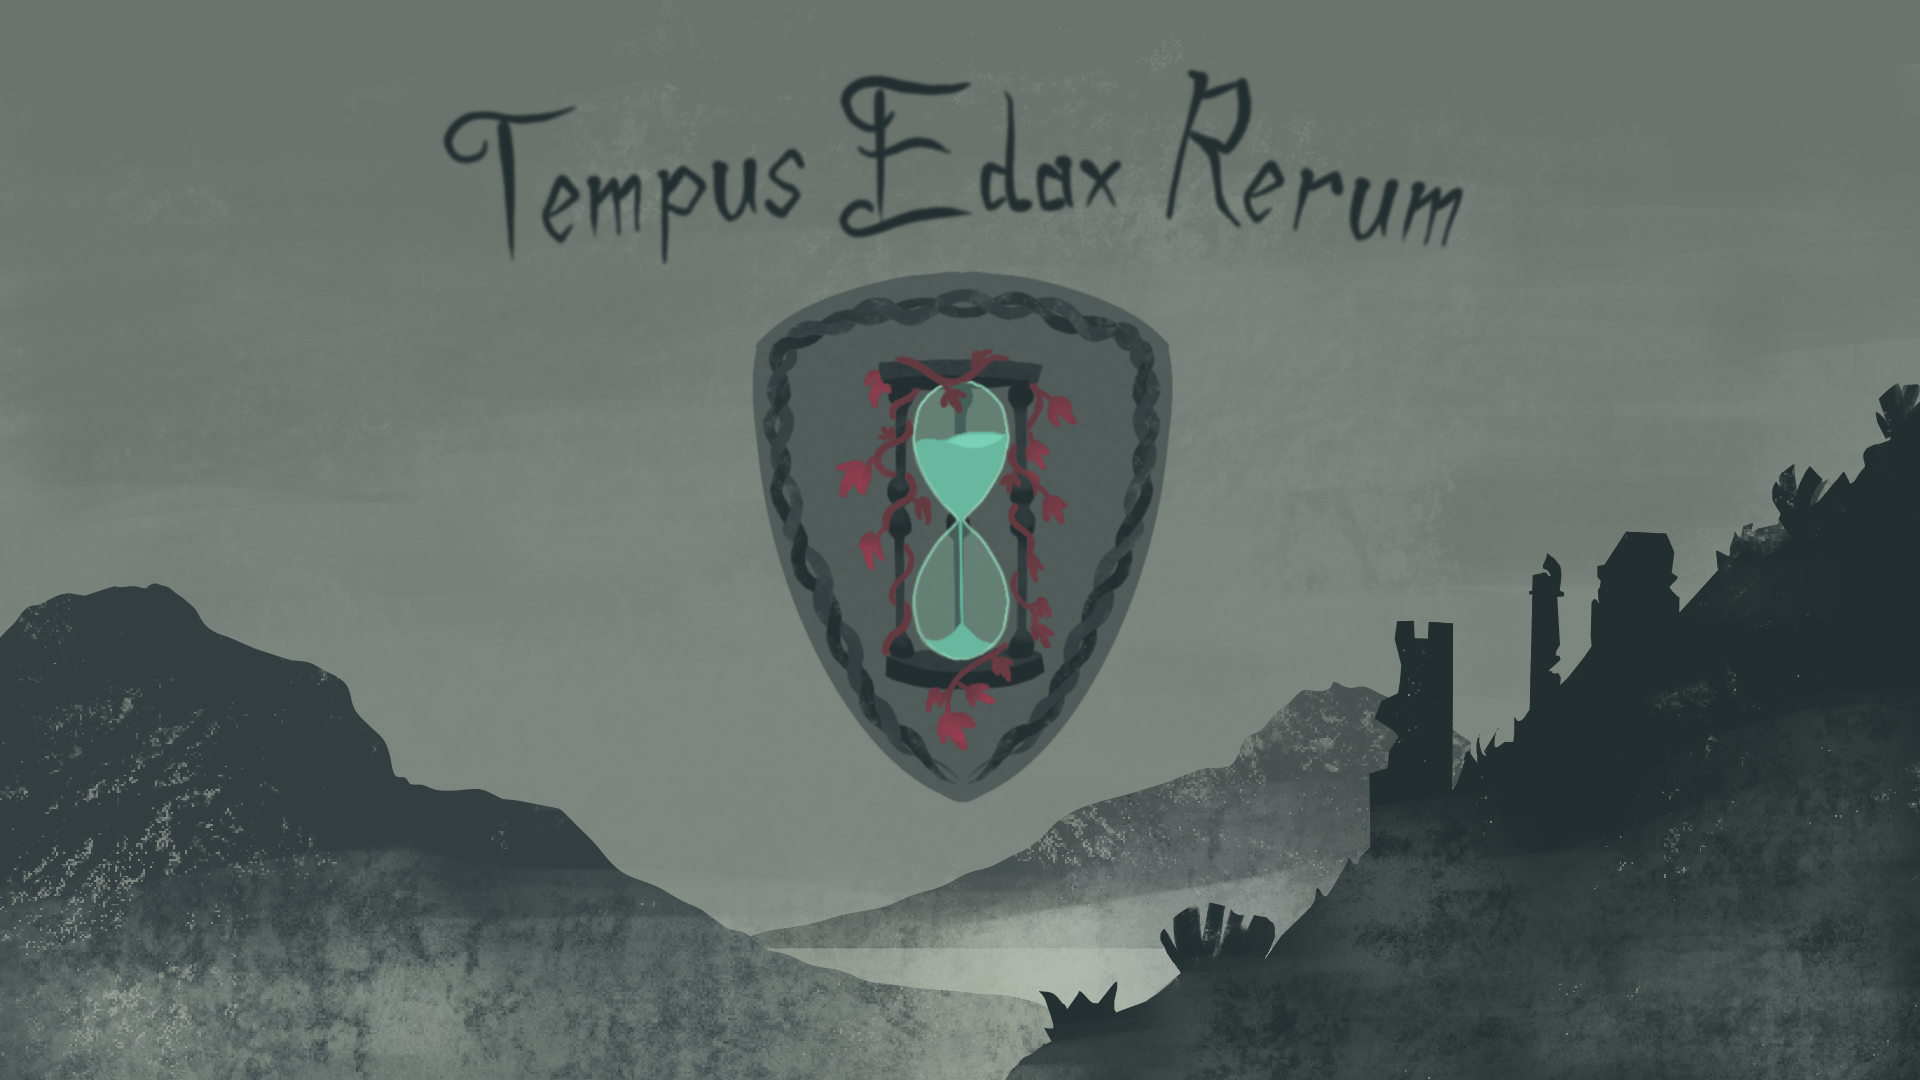 Tempus Edax Rerum